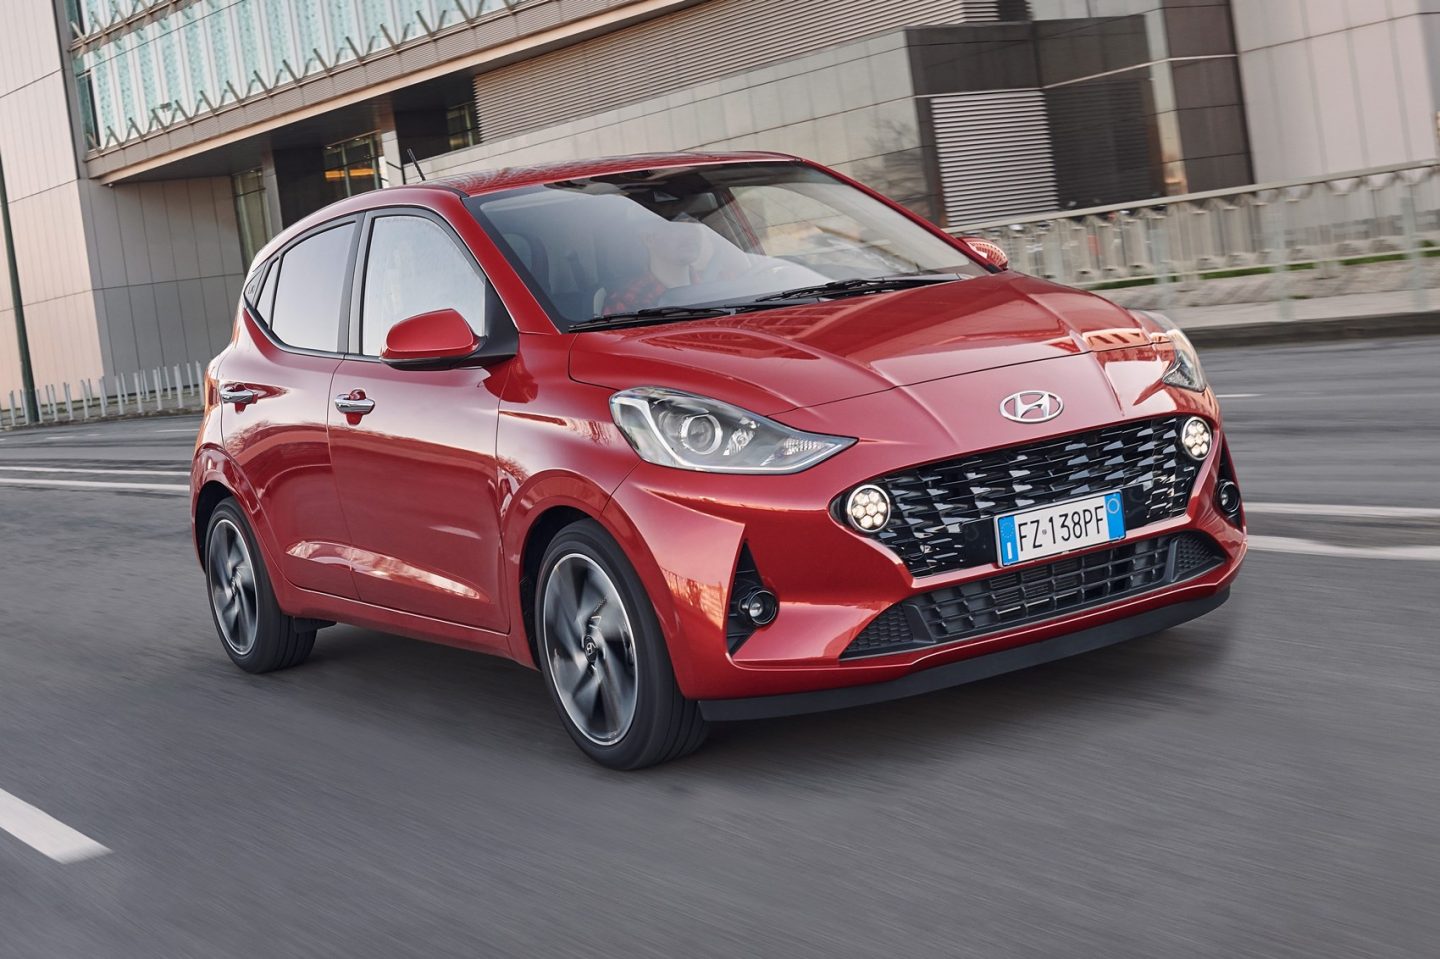 Hyundai i10 2020 in-depth review